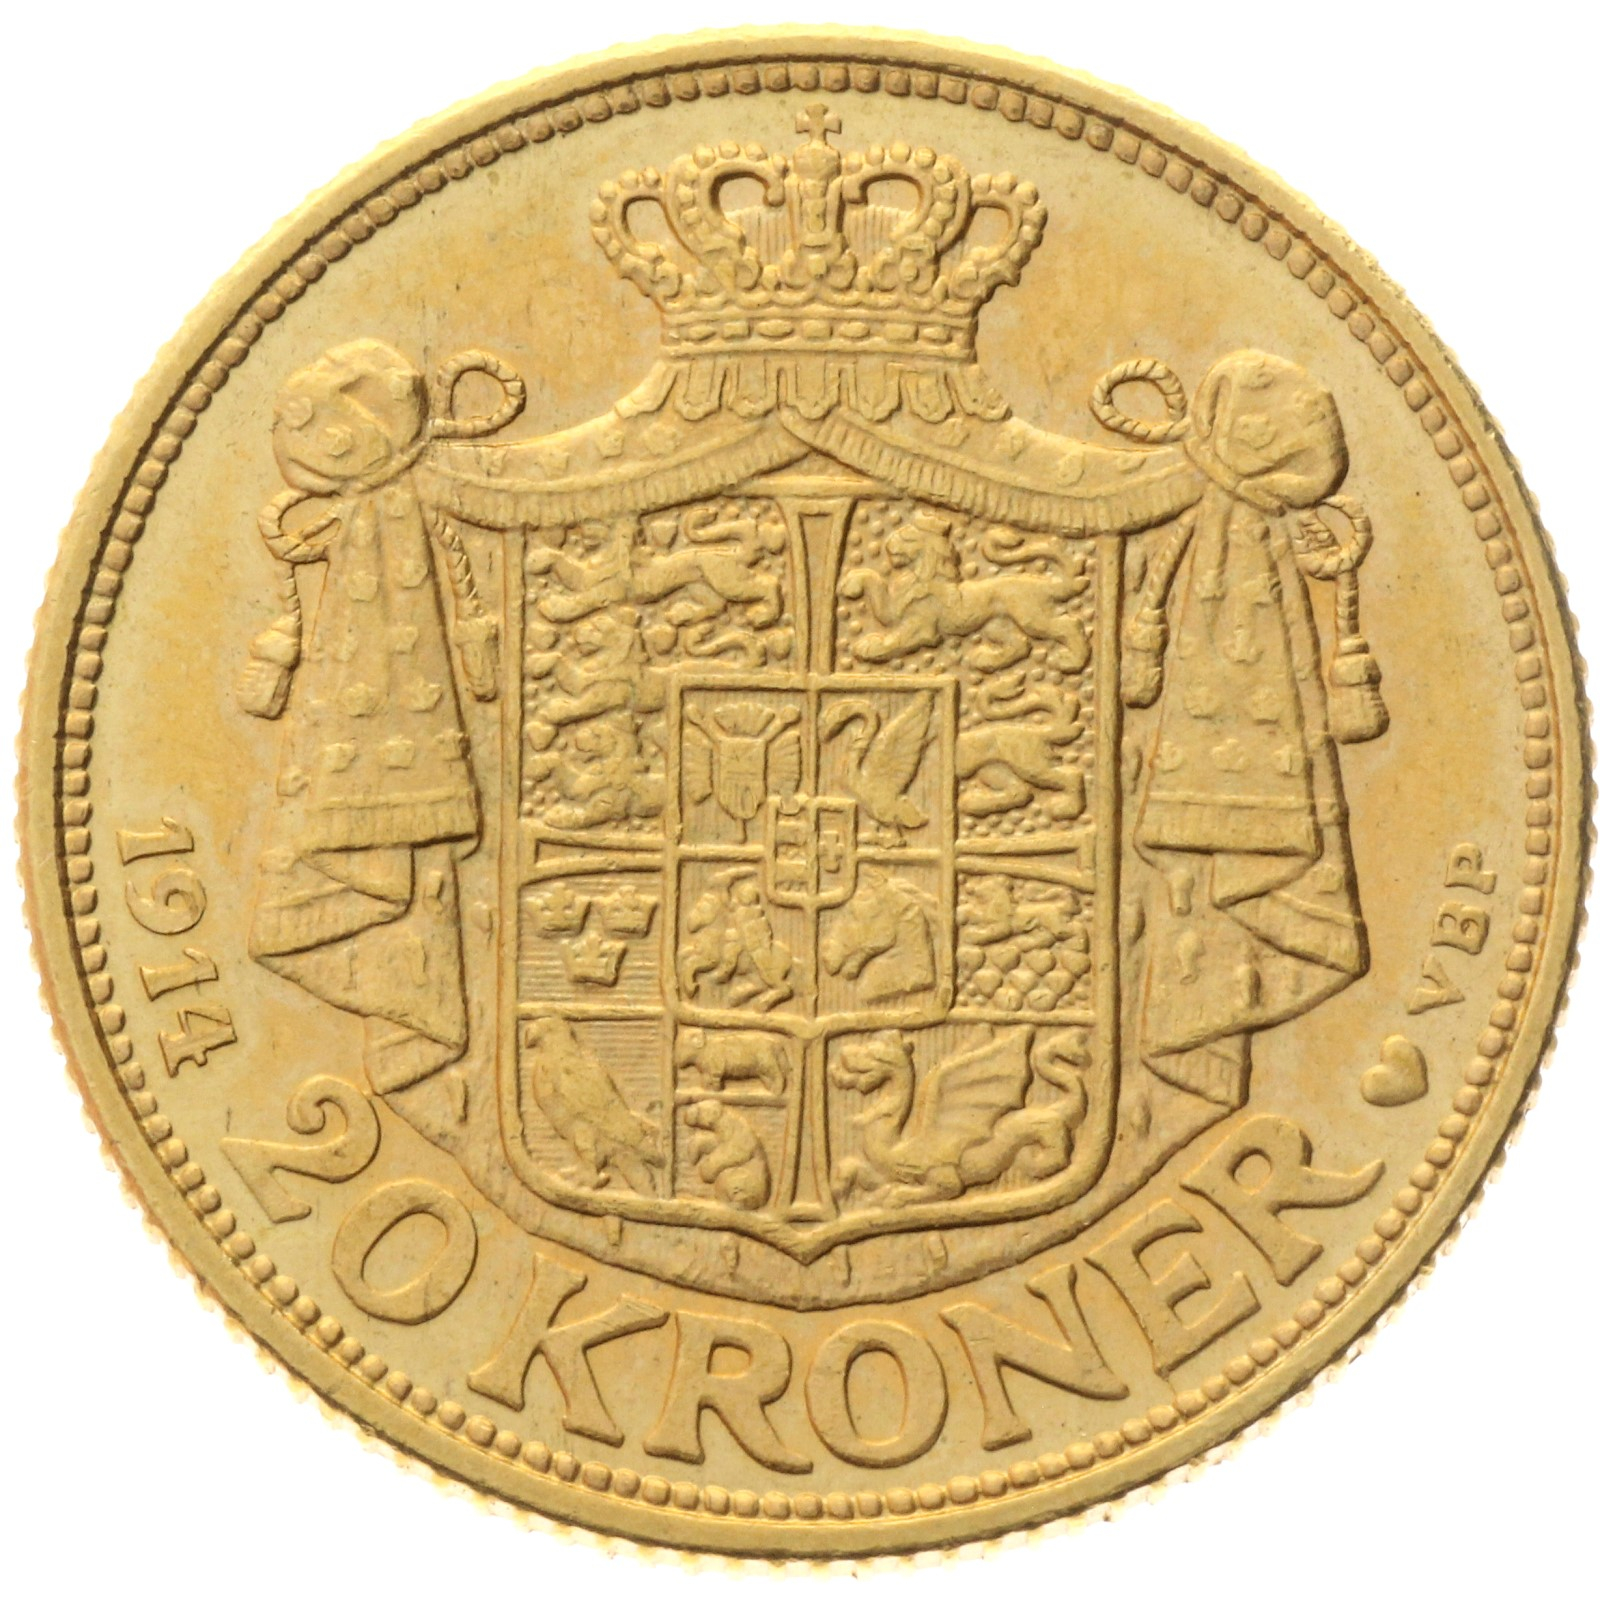 Denmark - 20 kroner - 1914 - Christian X 